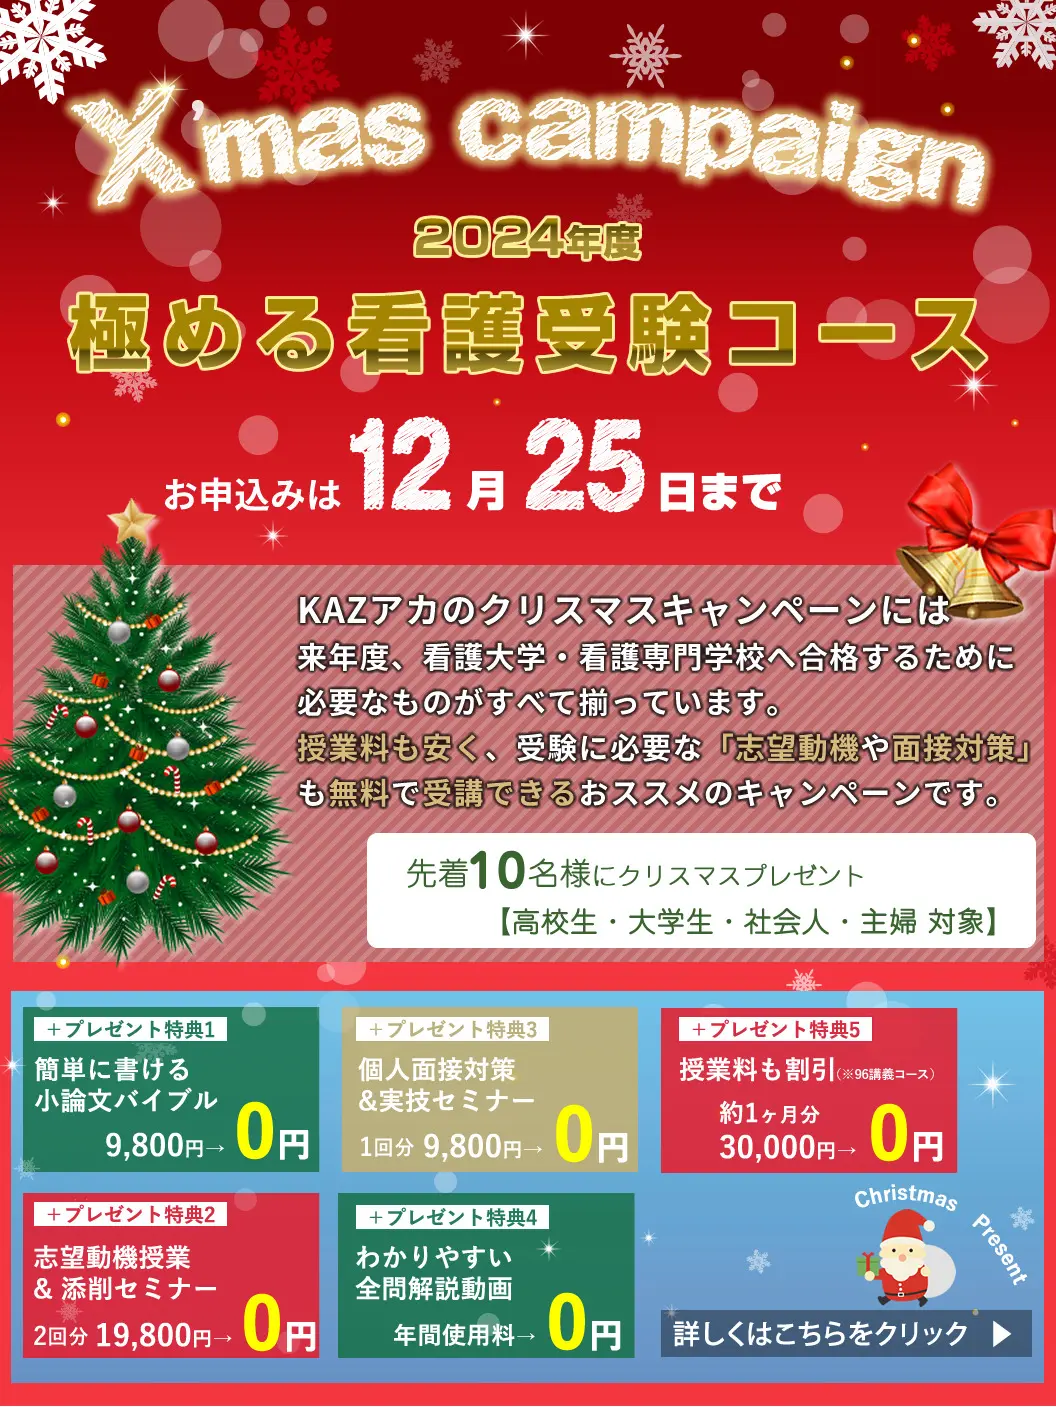 看護予備校の大阪KAZアカデミーの「極める看護受験コース」のクリスマスキャンペーンです。通常の授業料よりも「極める看護受験コース」を安く利用することができるので、KAZアカデミーに通学しやすくなります。詳細はクリック。